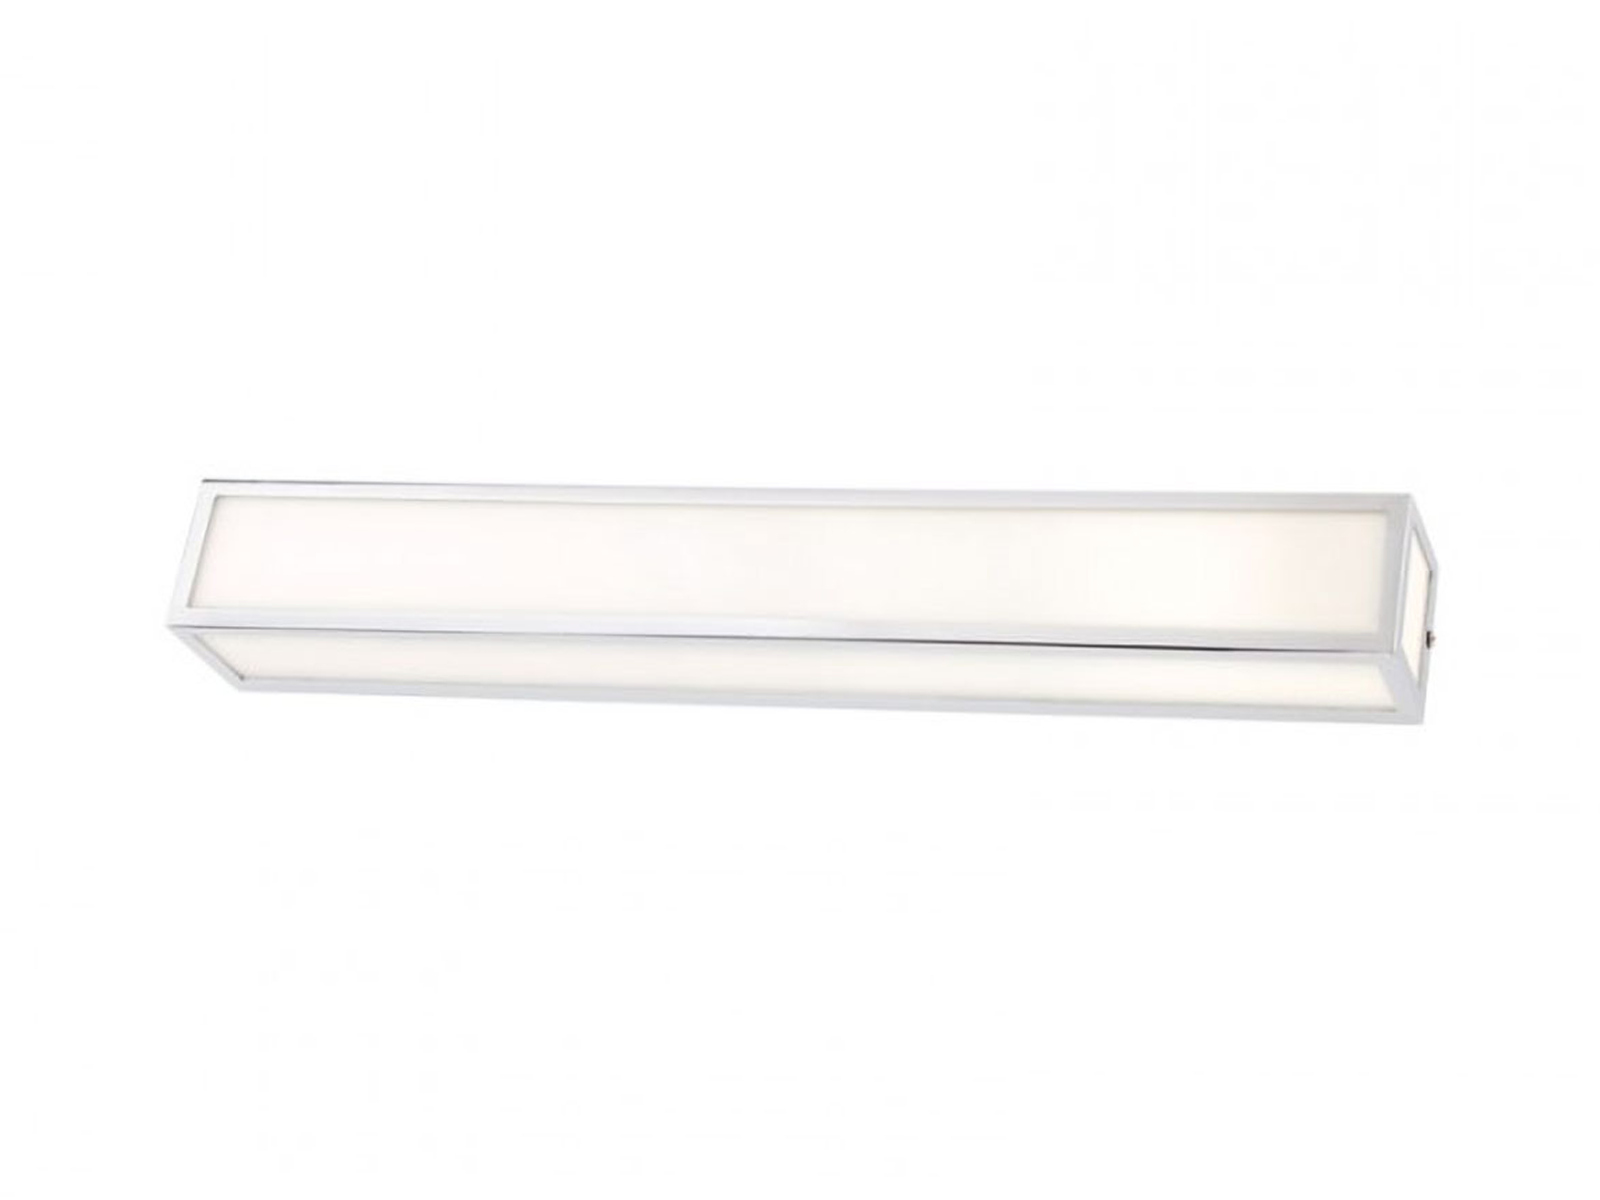 Koupelnové nástěnné LED svítidlo Ego chrom, 19W, 3000K, 60cm